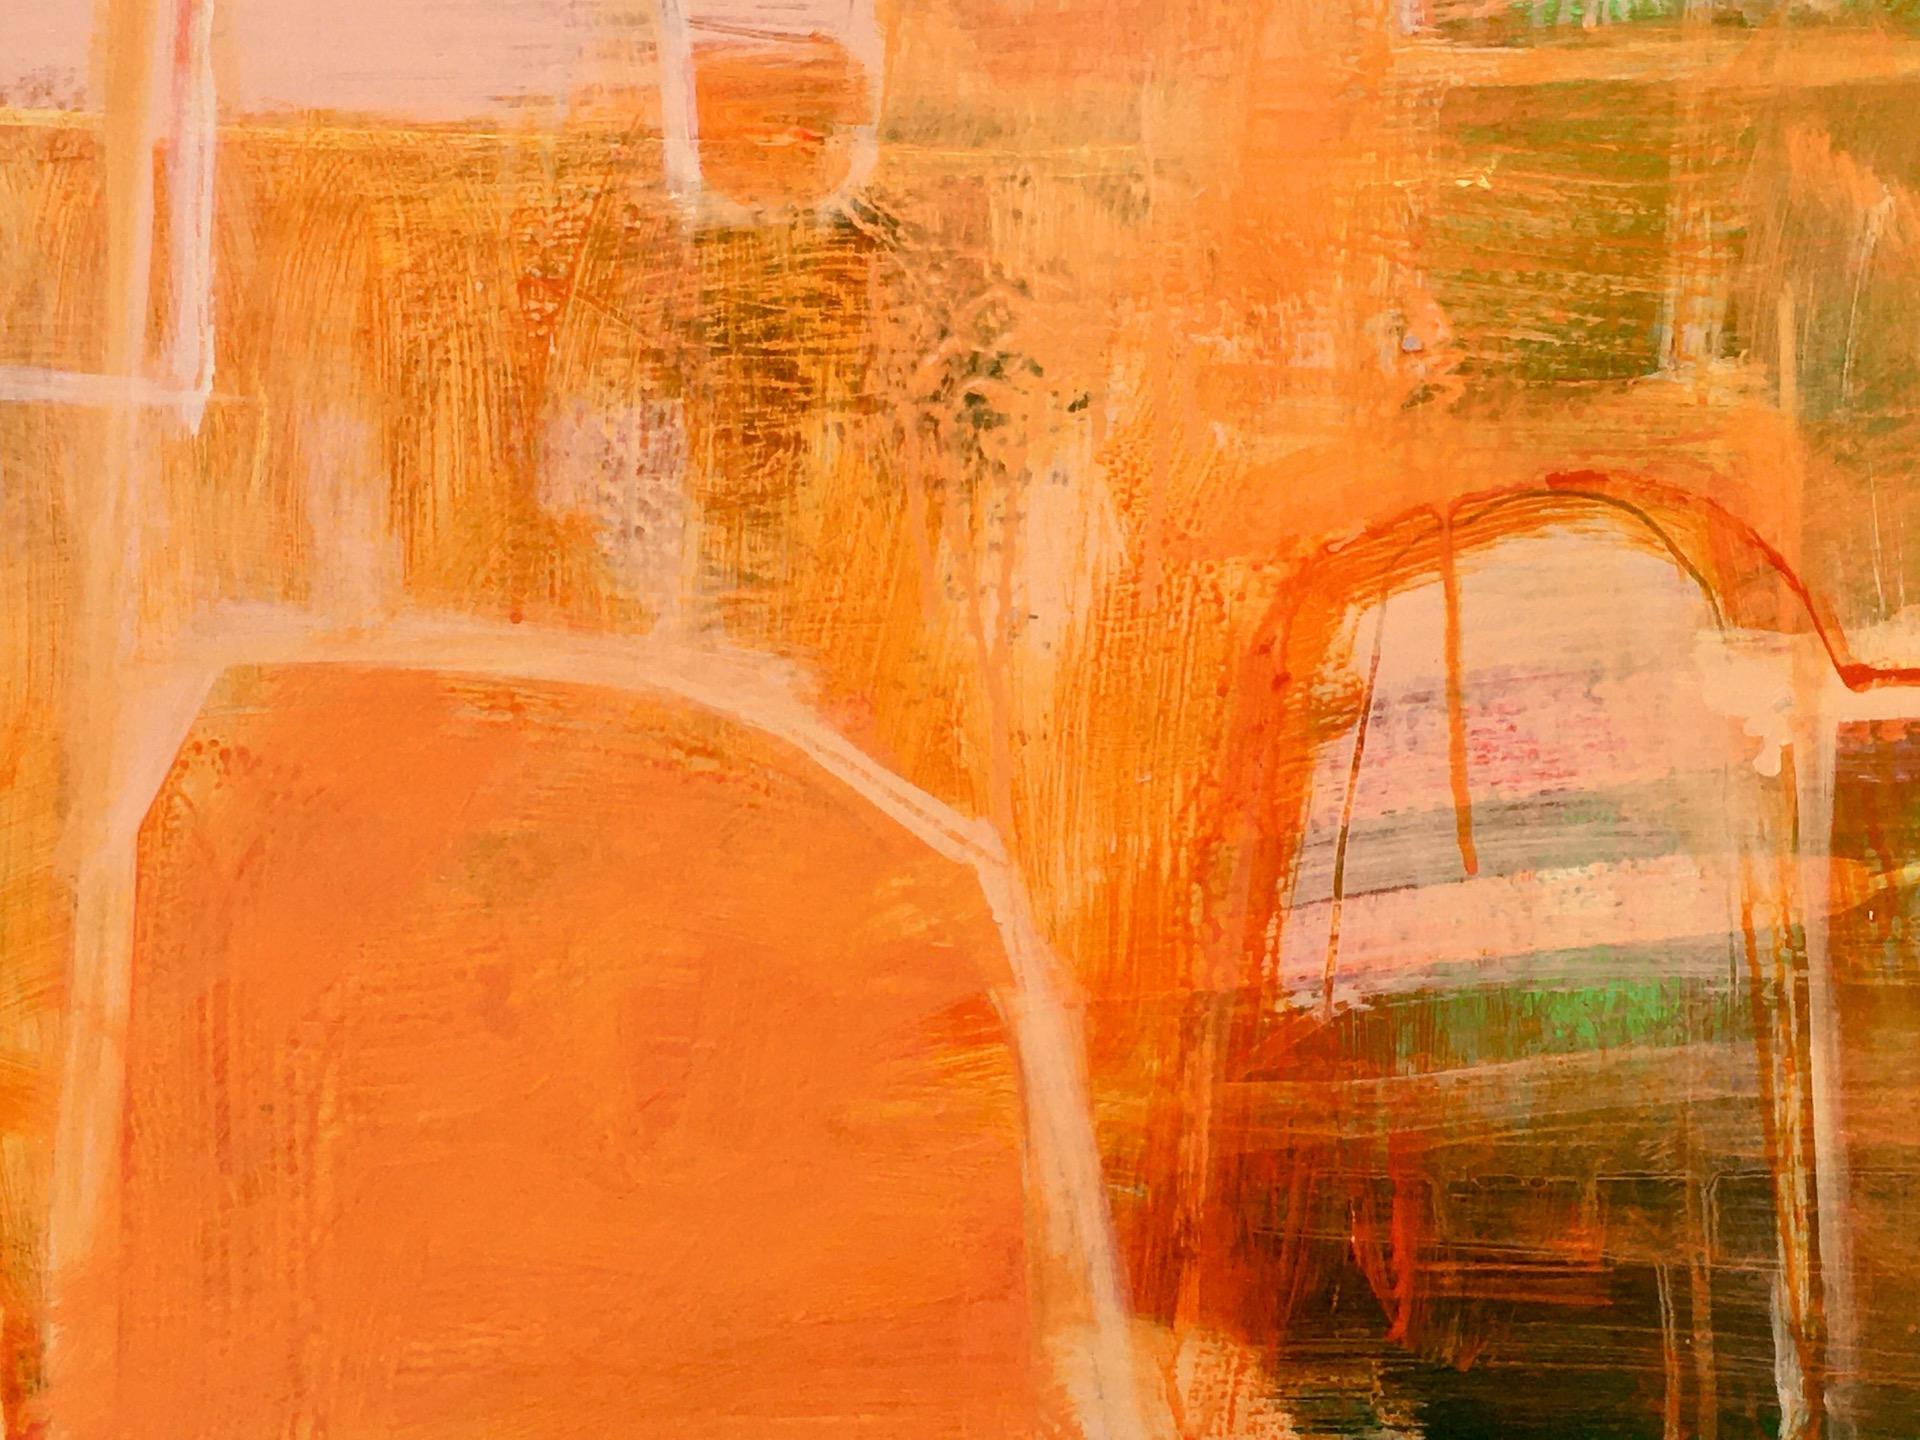 Entdecken Sie weitere Originalkunstwerke von Janet Keith bei Wychwood Art online und in unserer Galerie. Die in dem Gemälde verwendeten Farben - insbesondere das satte, leuchtende Orange und die Grüntöne - sind von Farbkombinationen in indischen